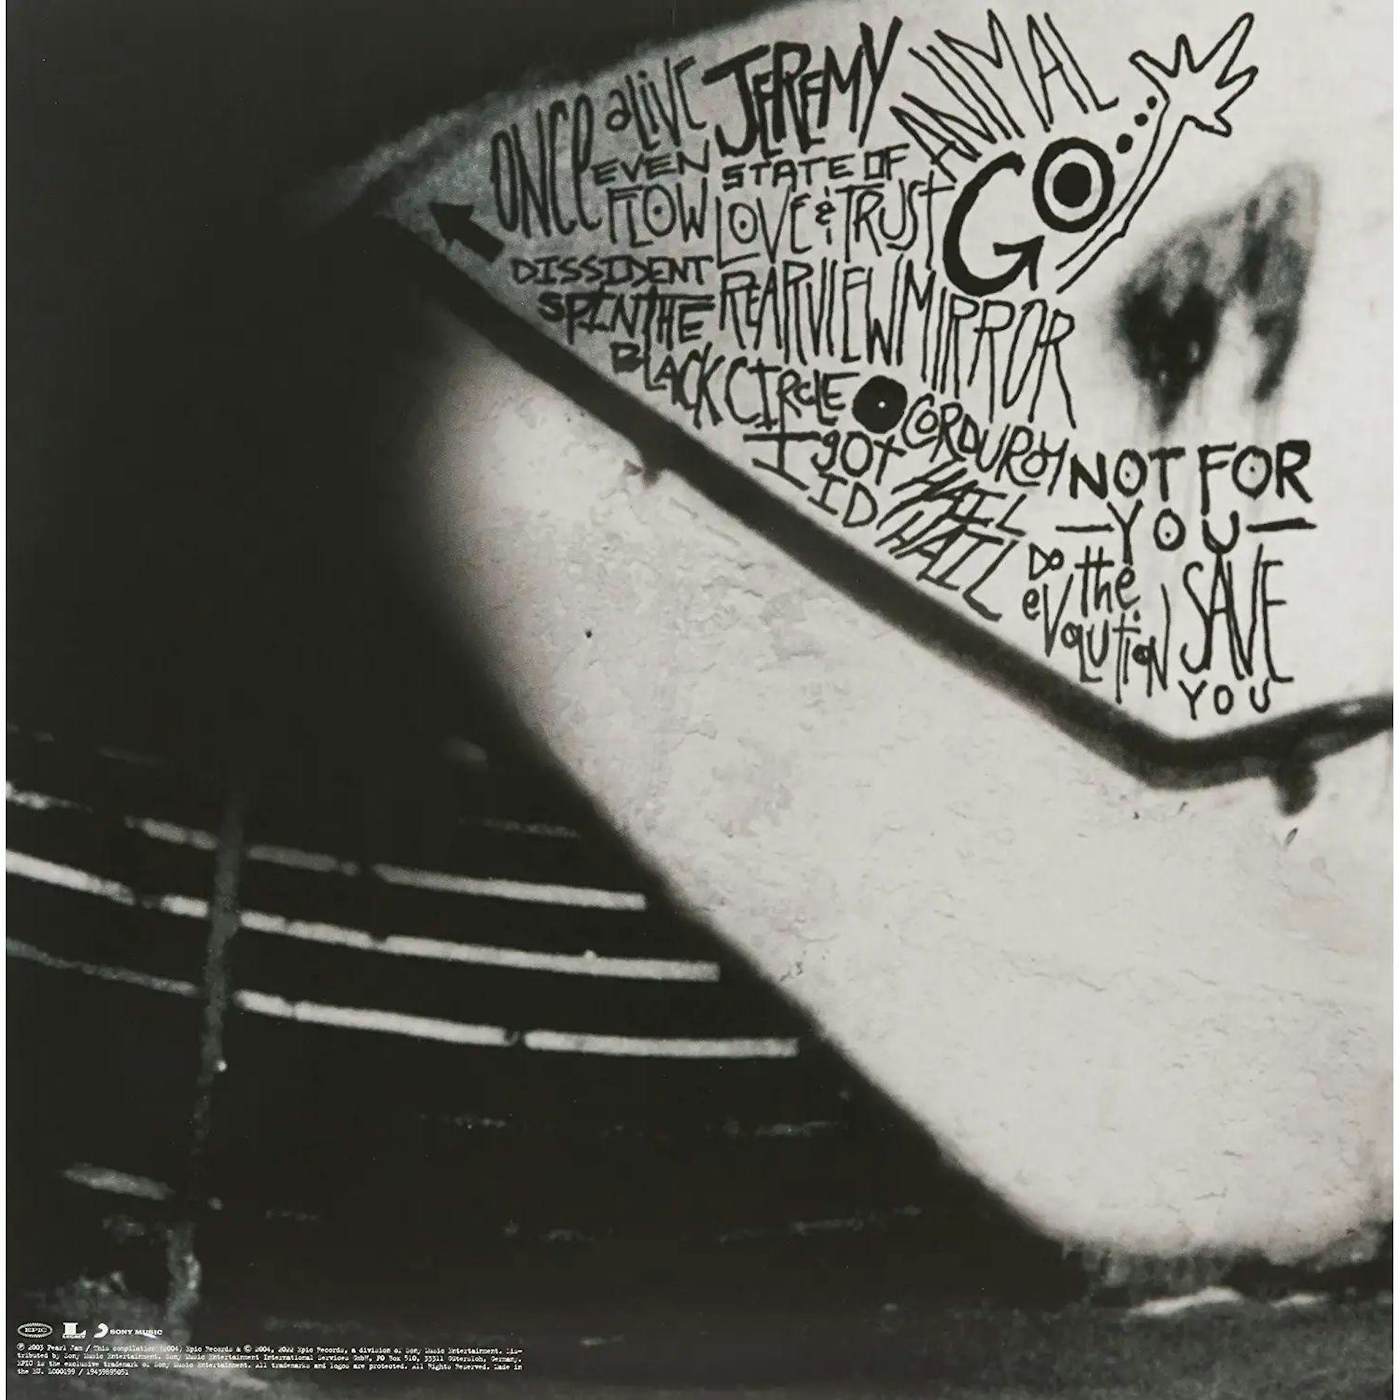 Pearl Jam - Rearview-Mirror Vol. 2 (Down Side) [Black Vinyl]